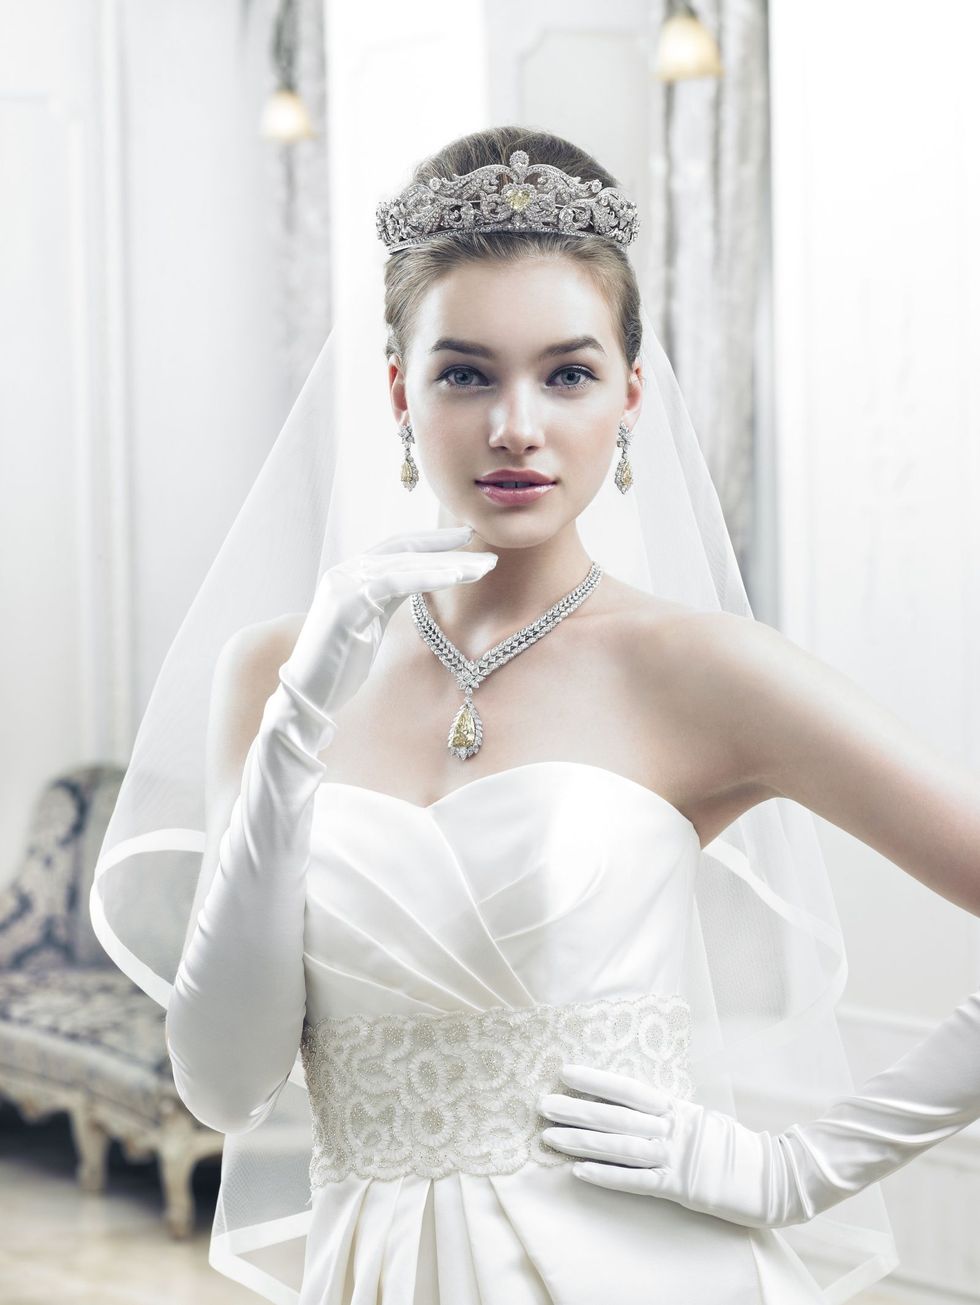 Clothing, Bridal clothing, Bridal accessory, Shoulder, Photograph, White, Wedding dress, Dress, Bride, Eyelash, 